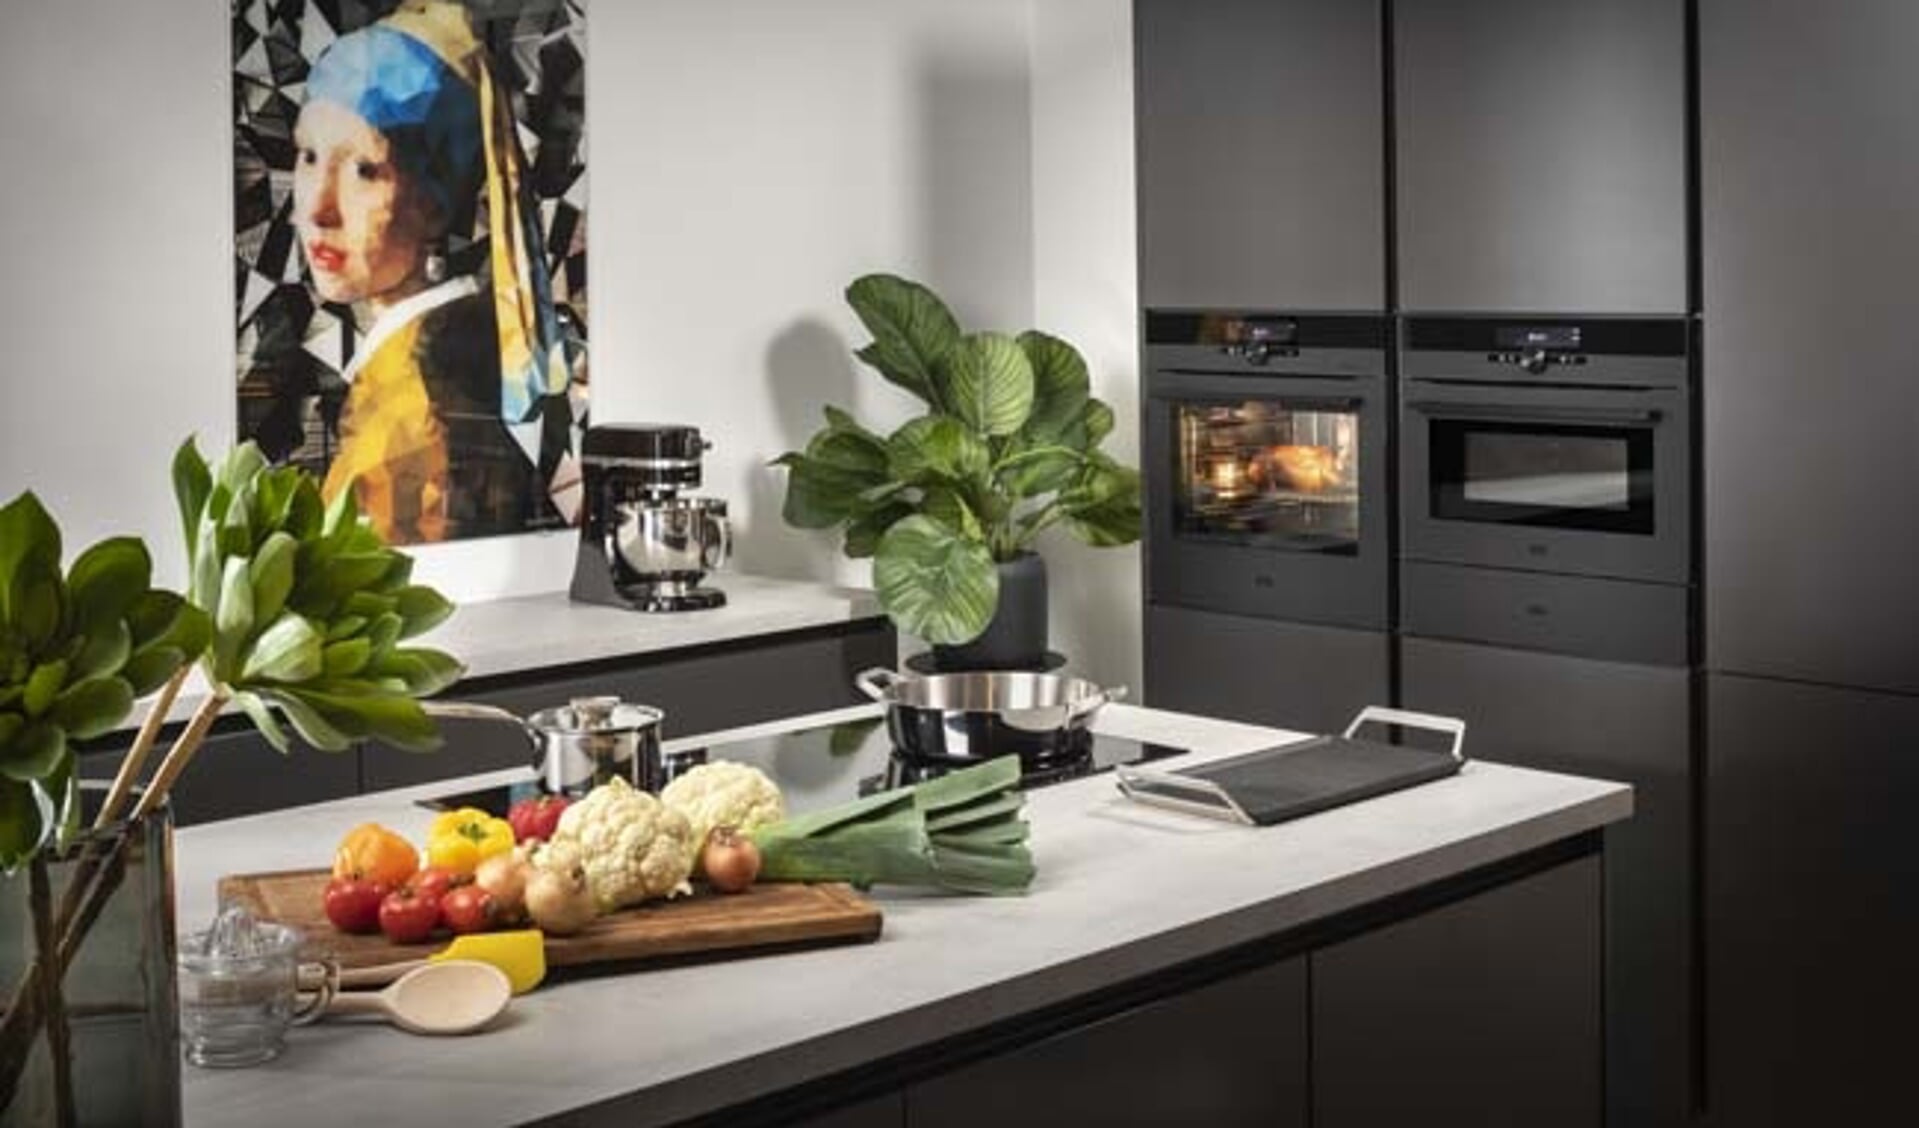 Keukenapparatuur gaat tegenwoordig ook al online, bijvoorbeeld de oven.